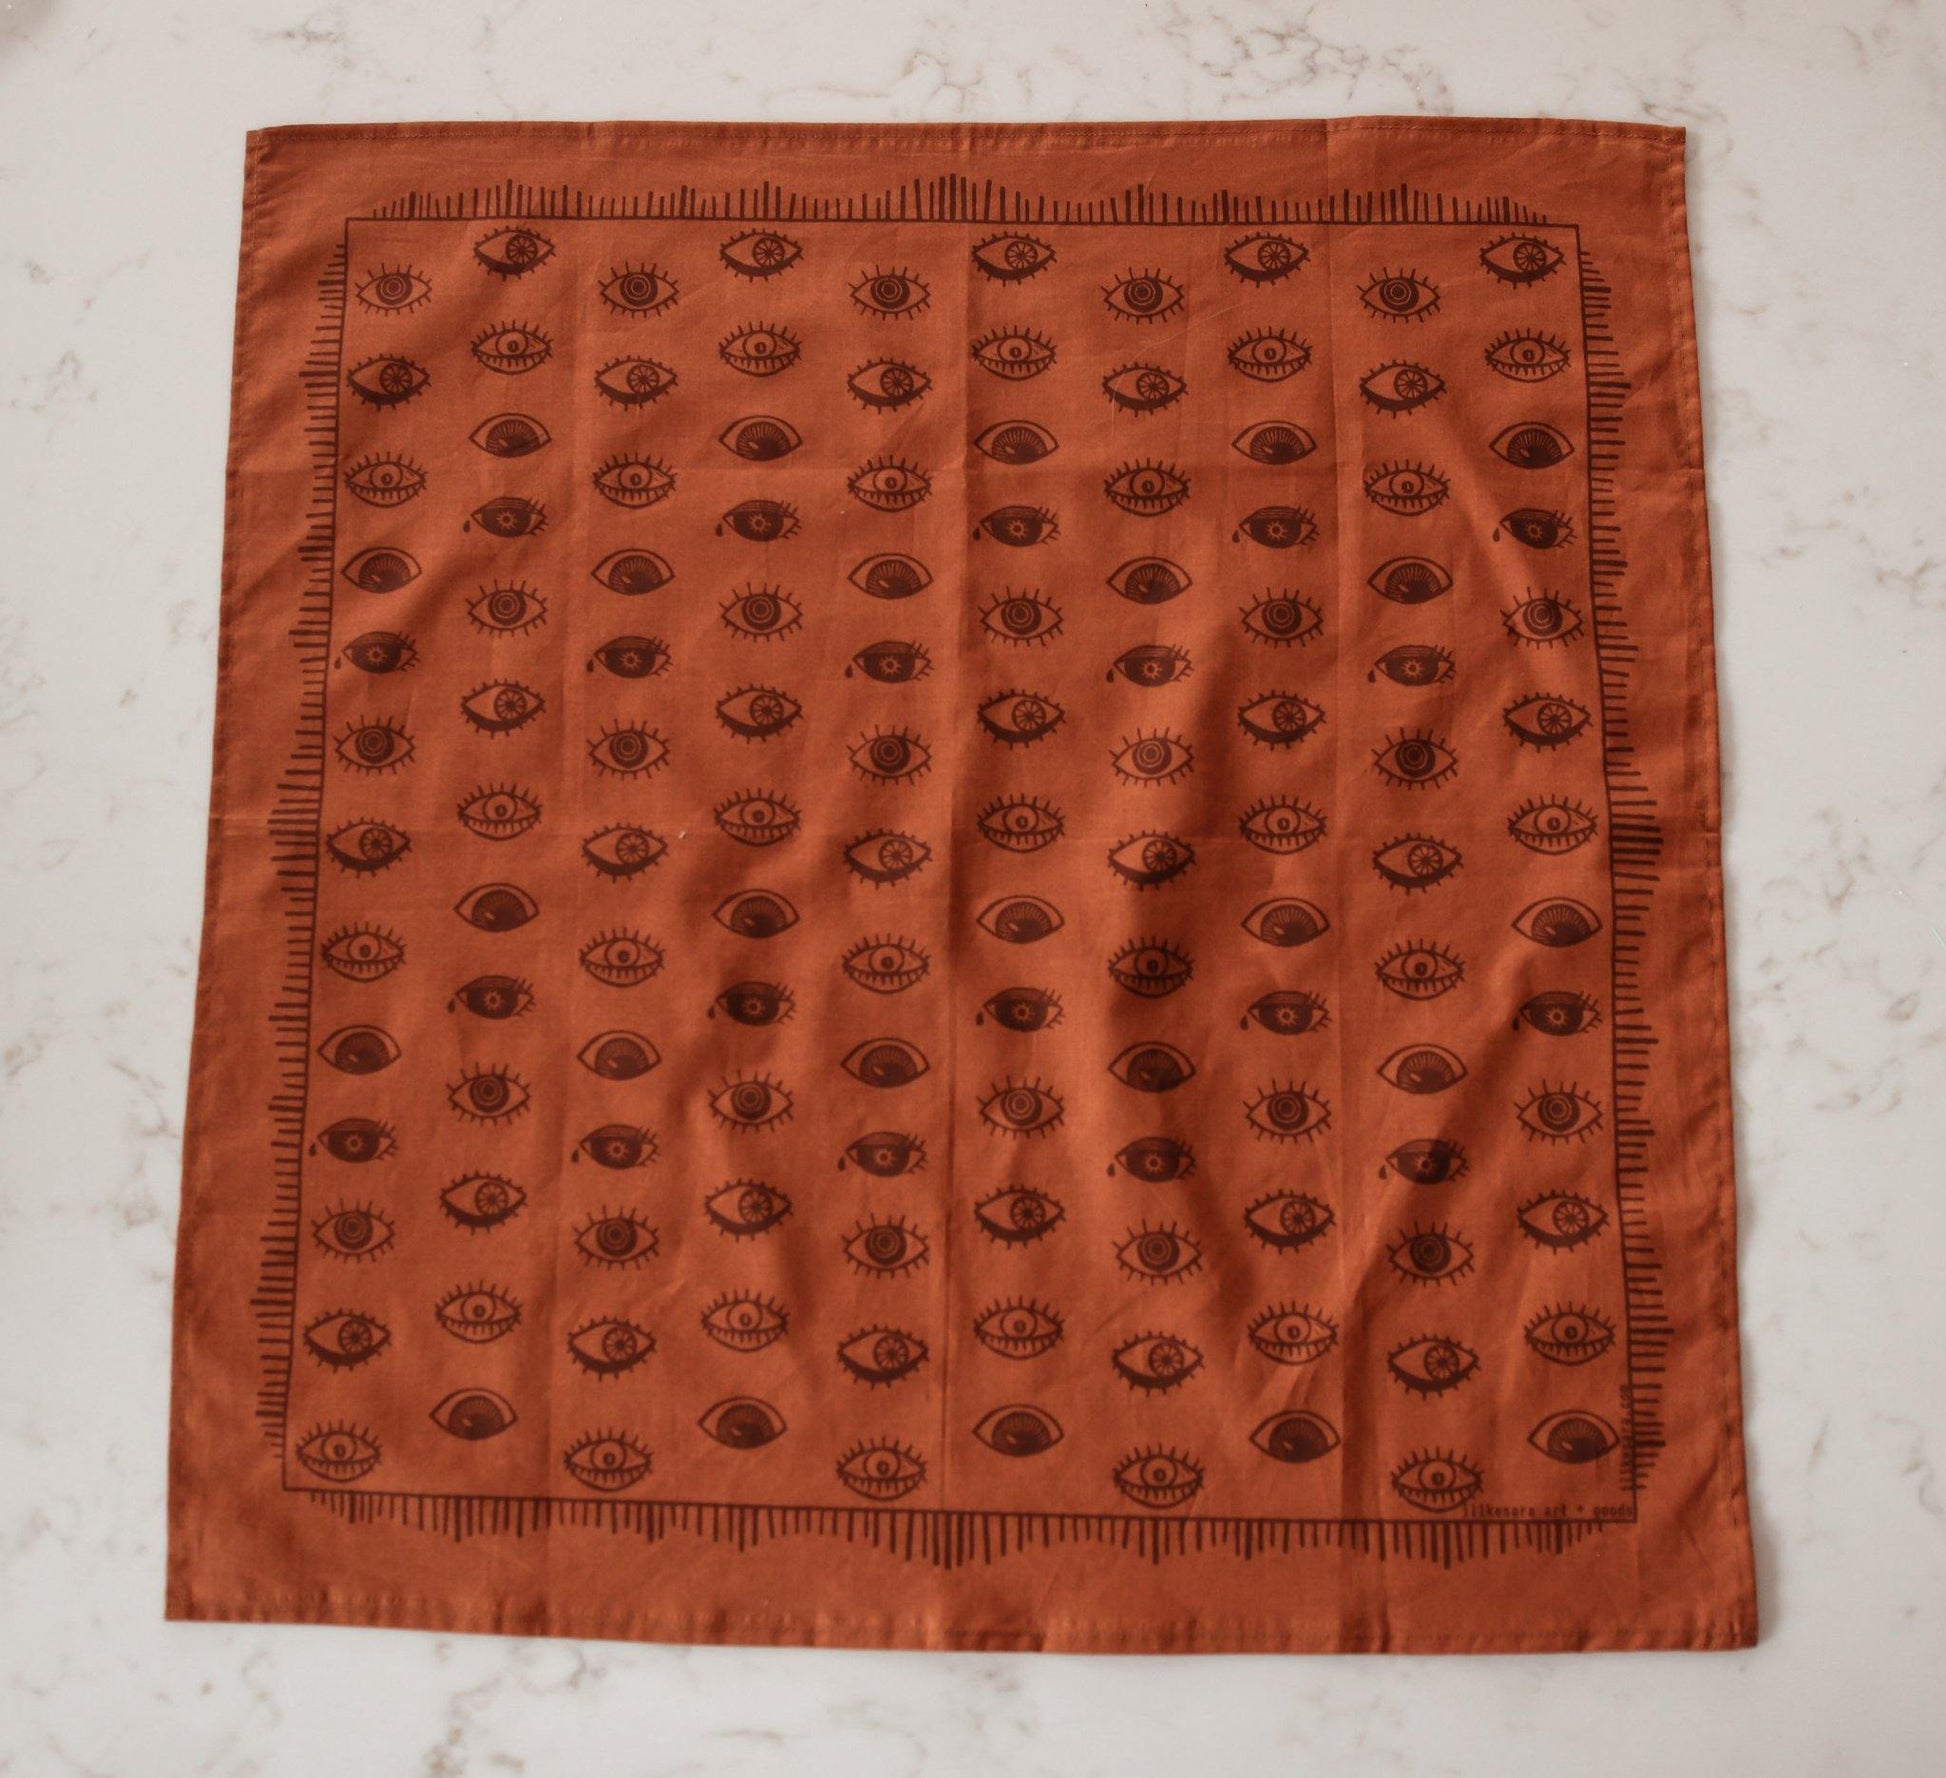 Rust colored bandana with brown eyeball print